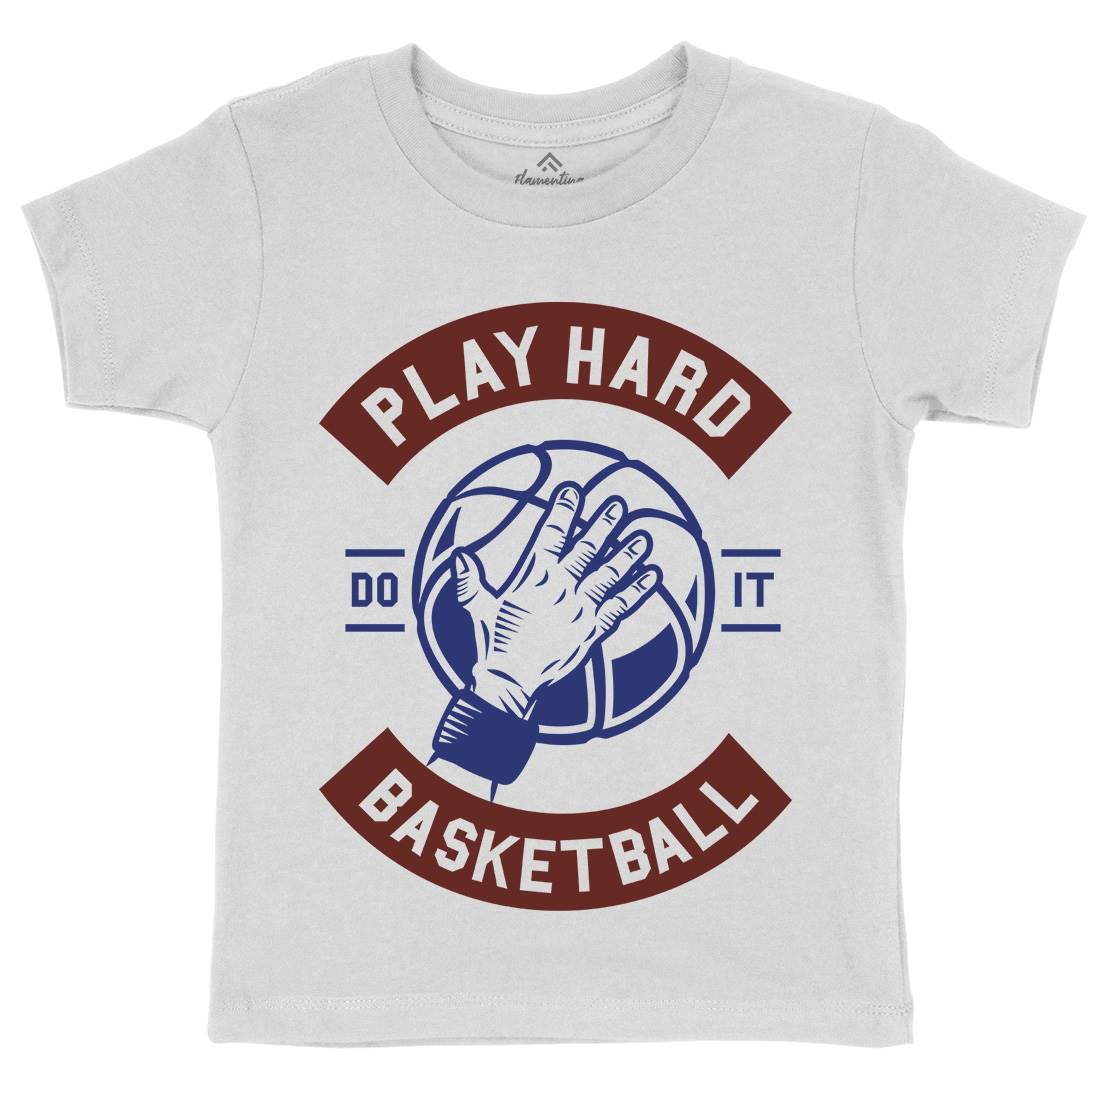 Play Hard Basketball Kids Crew Neck T-Shirt Sport A261